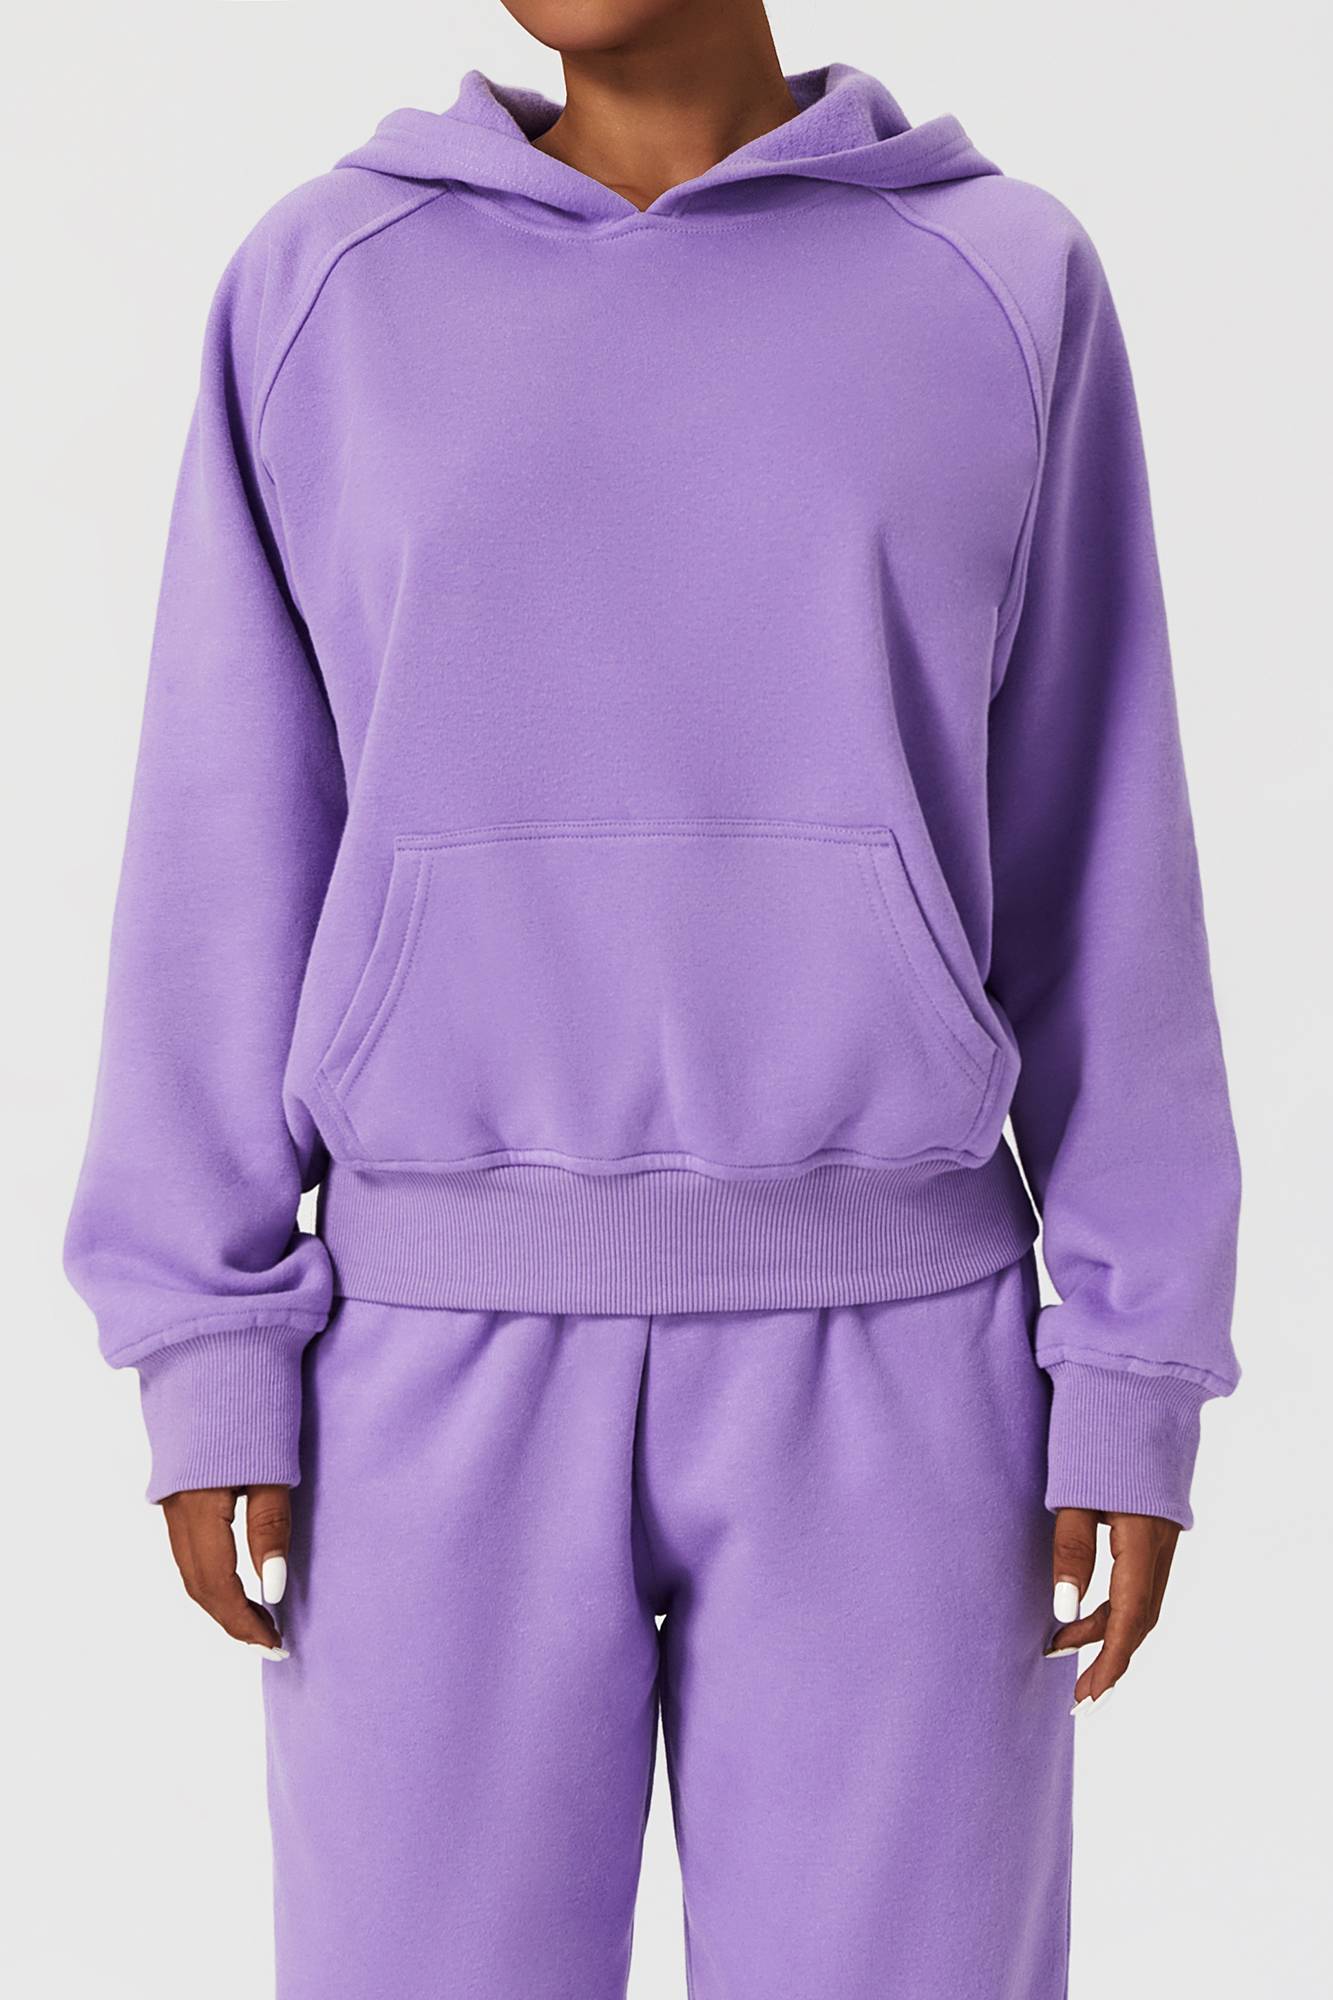 All in Motion Long Sleeve Fleece Sports Hoodie Jacket for Women – Zioccie